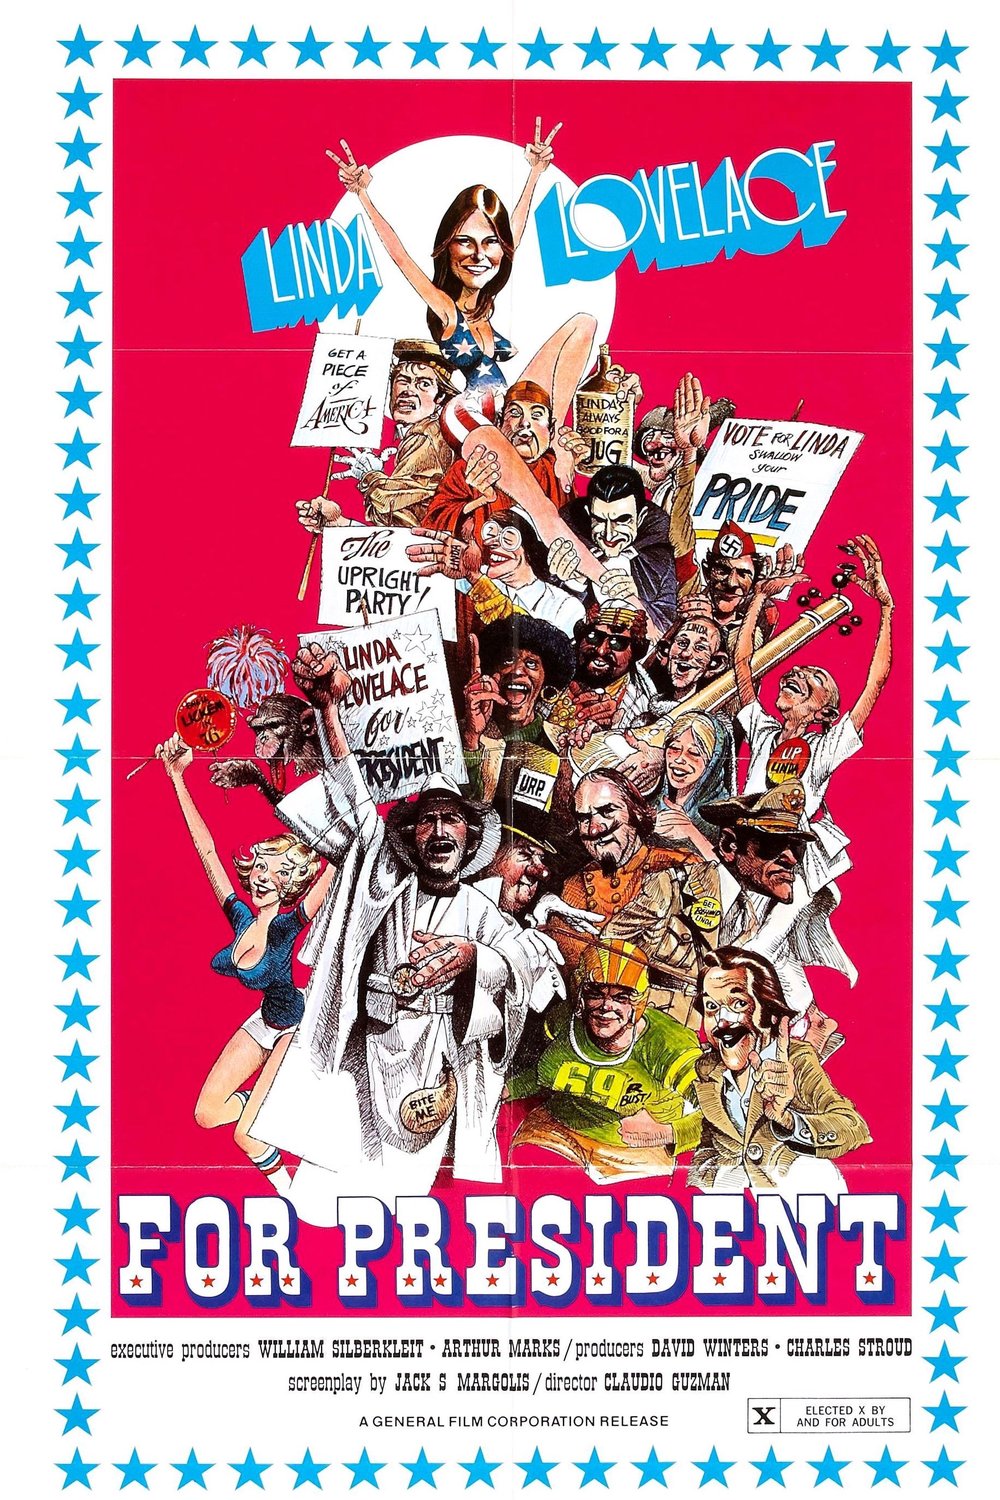 Poster of the movie Linda Lovelace for President